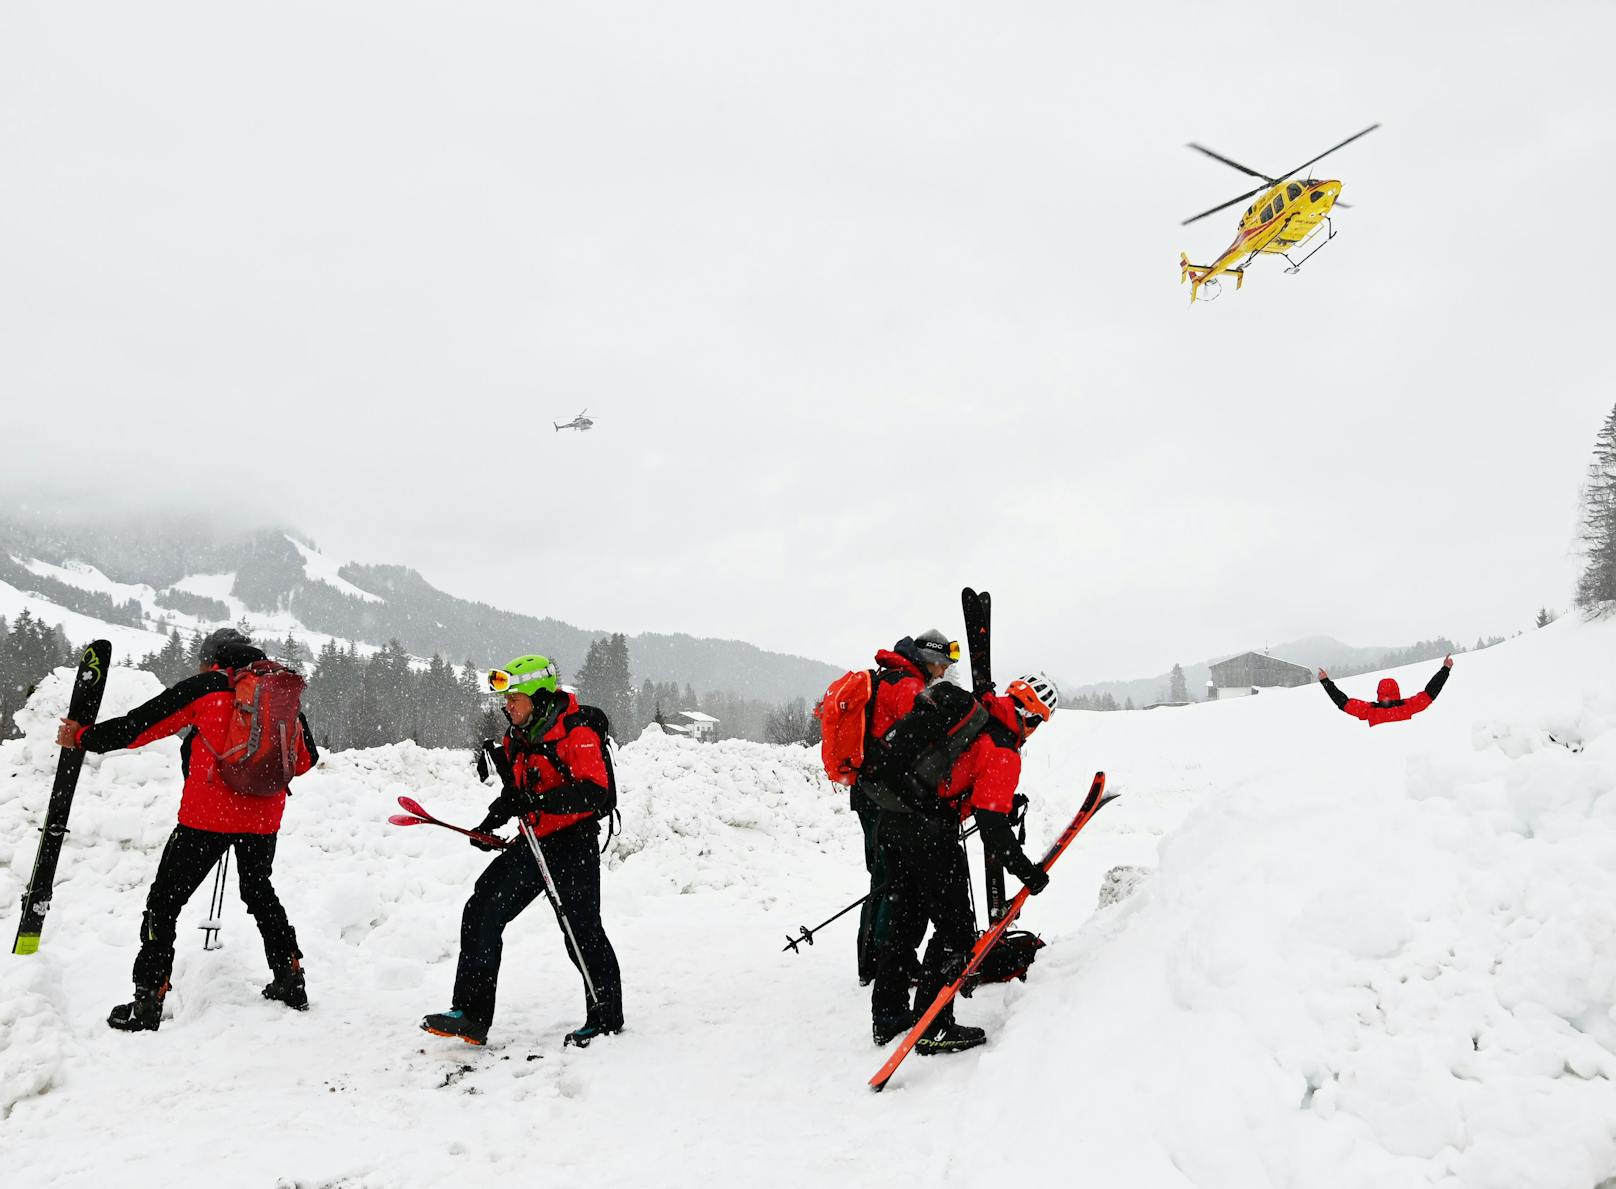 Aufgrund der prekären Wetter- und Schnee-Situation galt zeitgleich in Tirol die zweithöchste Lawinenwarnstufe. Trotzdem ließen sich viele Wintersportler davon nicht aufhalten.